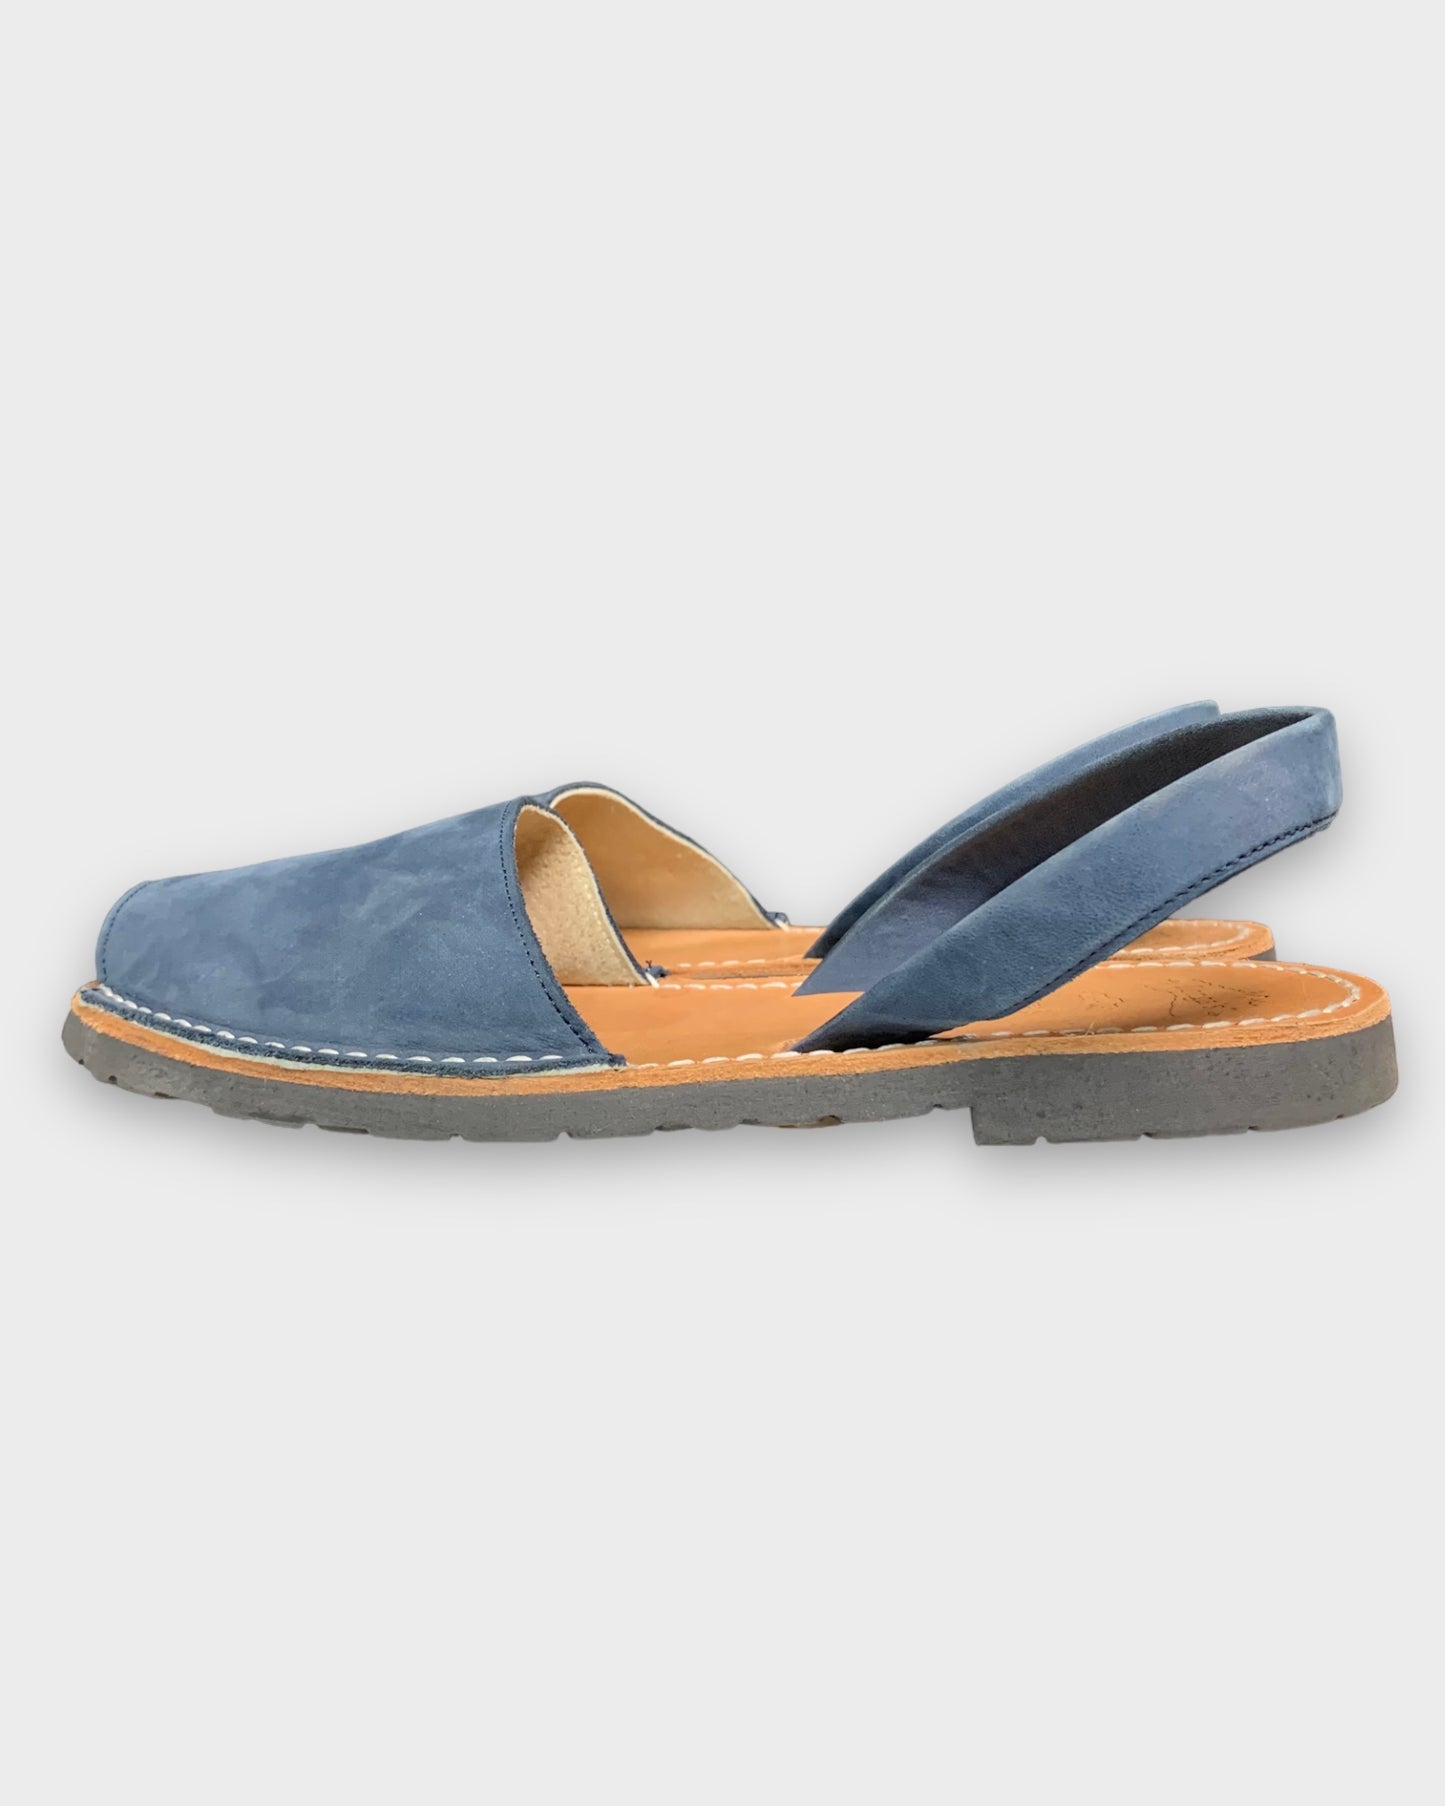 Sandales bleue llongas